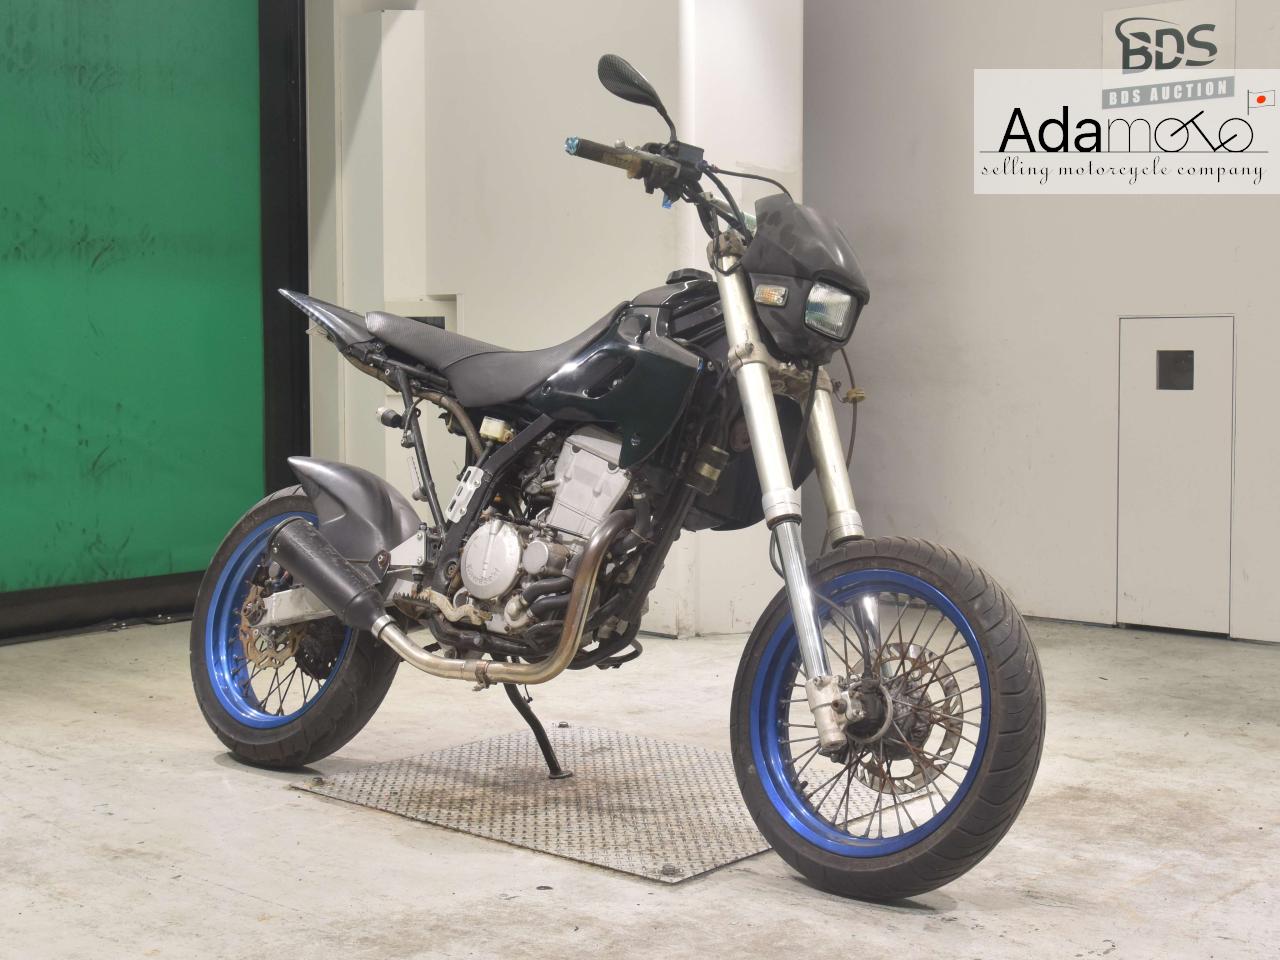 Kawasaki D TRACKER - Adamoto - Motorcycles from Japan